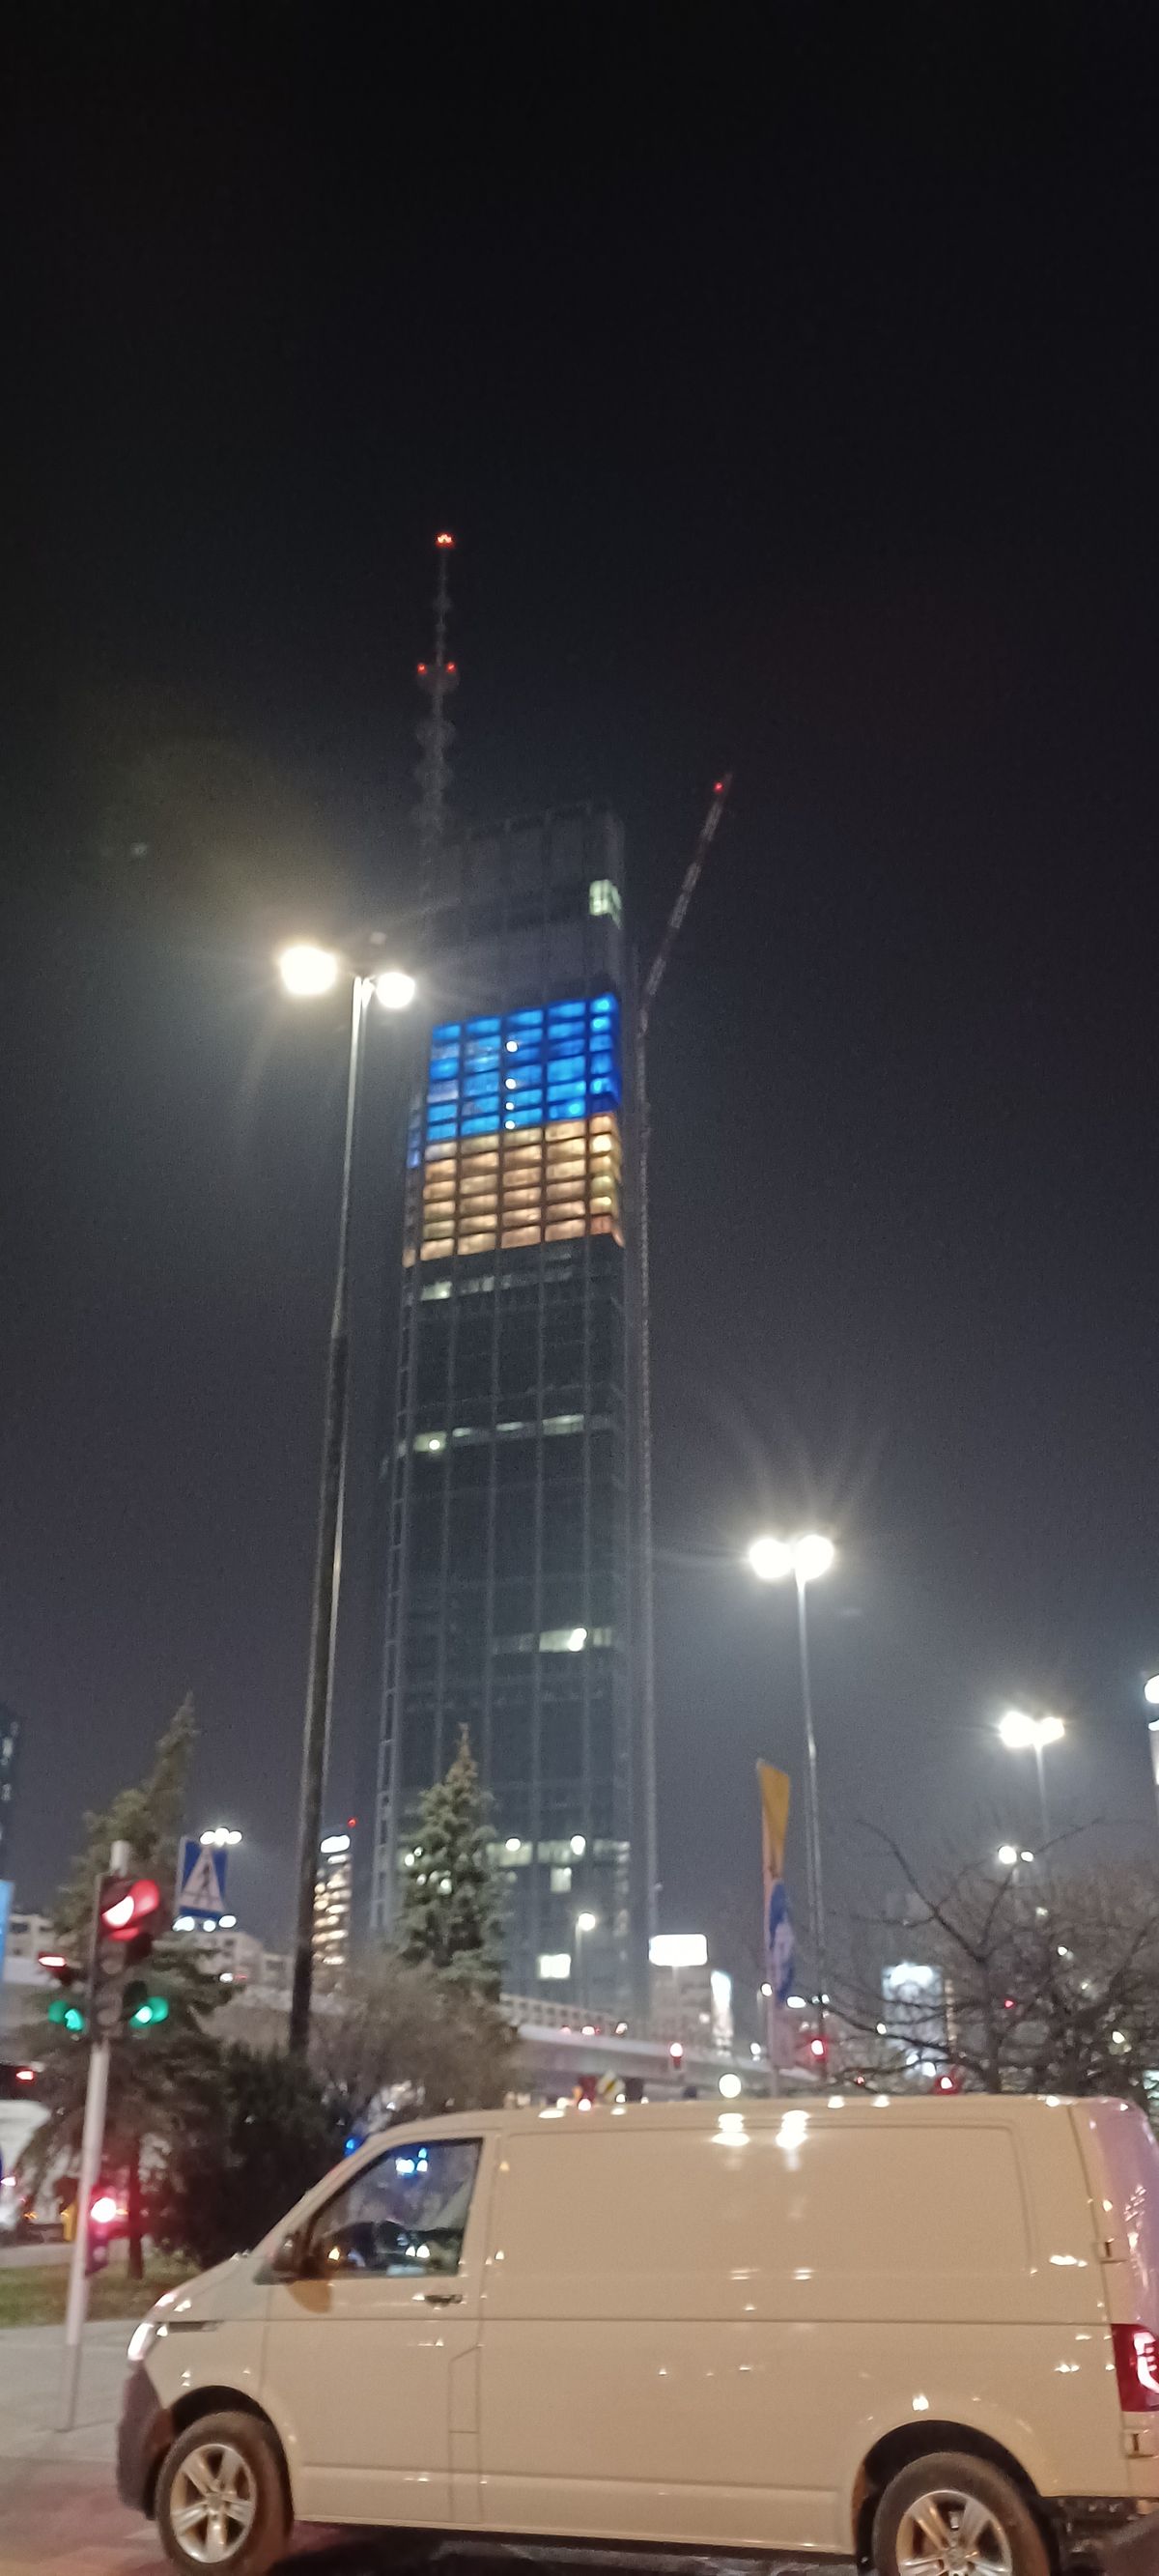 Подсветка в цвета флага Украины на одном из небоскребов в Варшаве